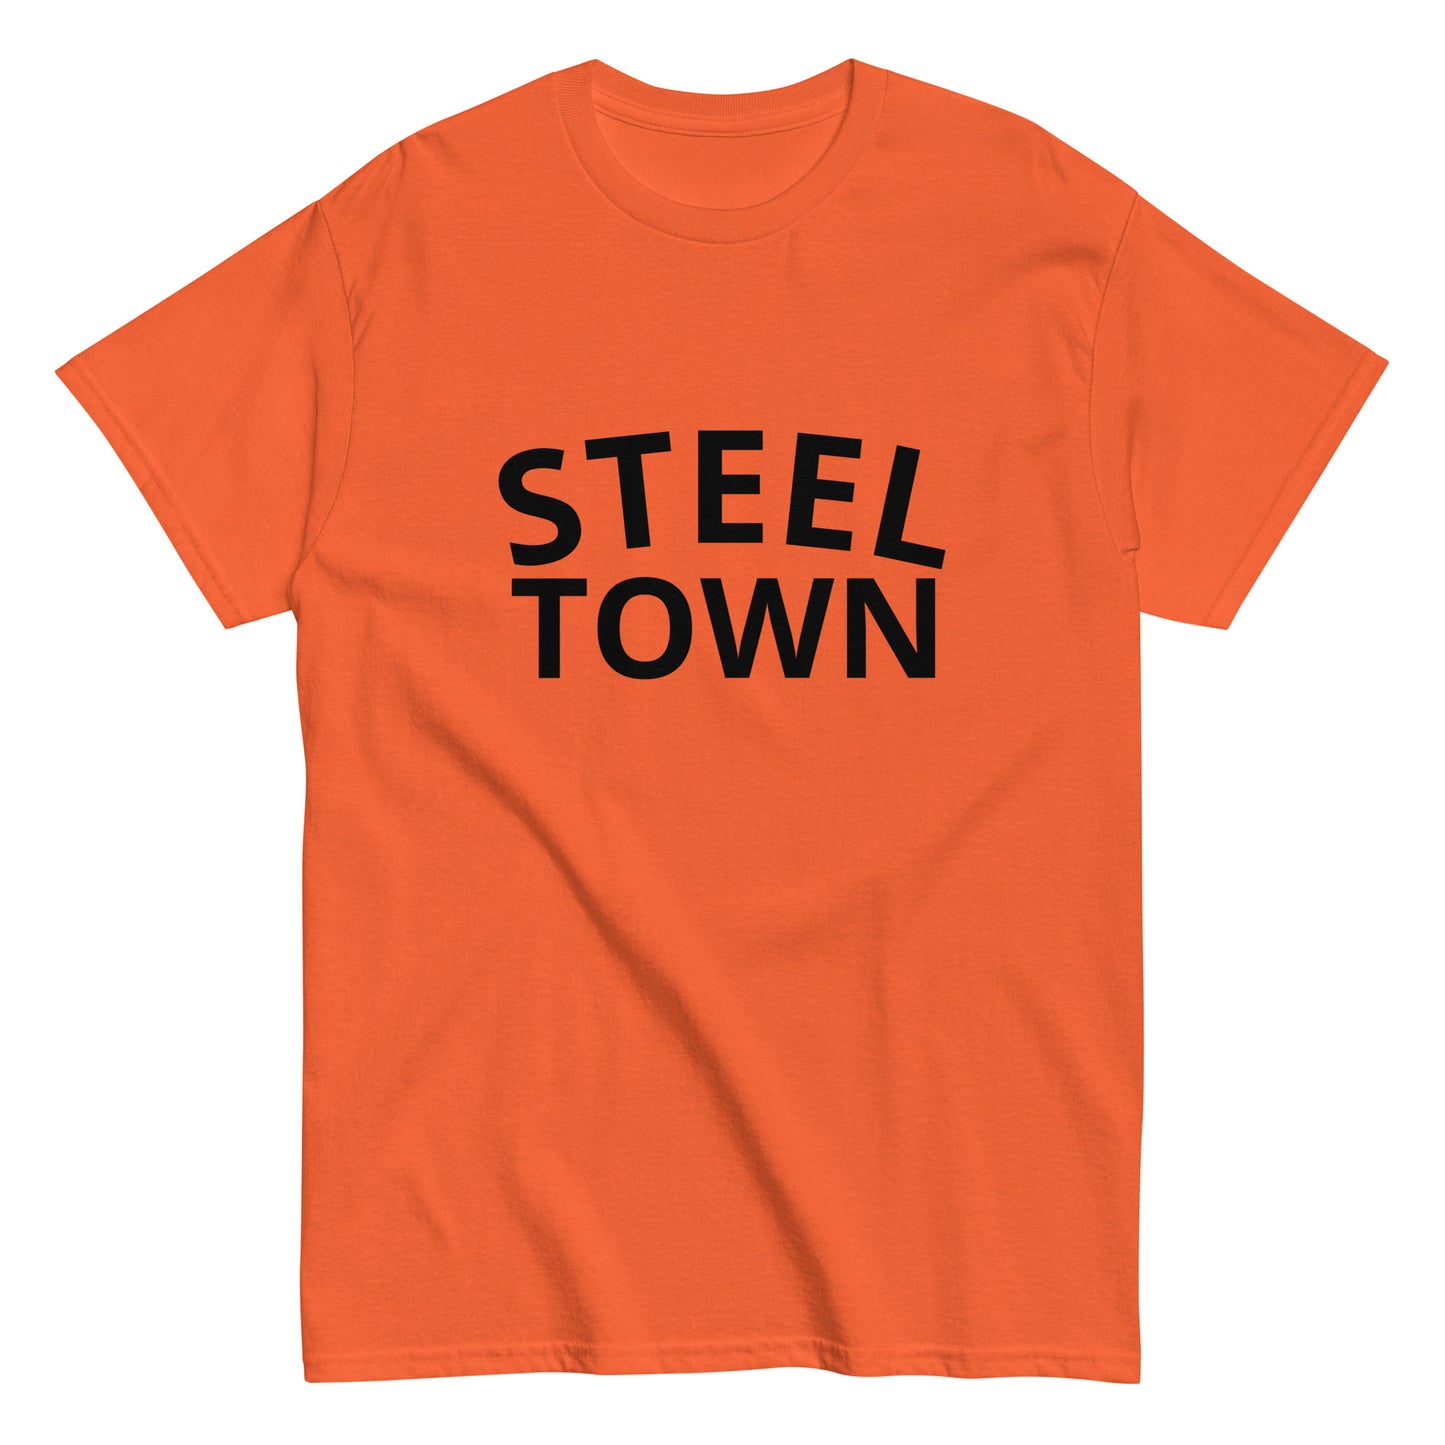 STEEL TOWN Logo Men's classic tee